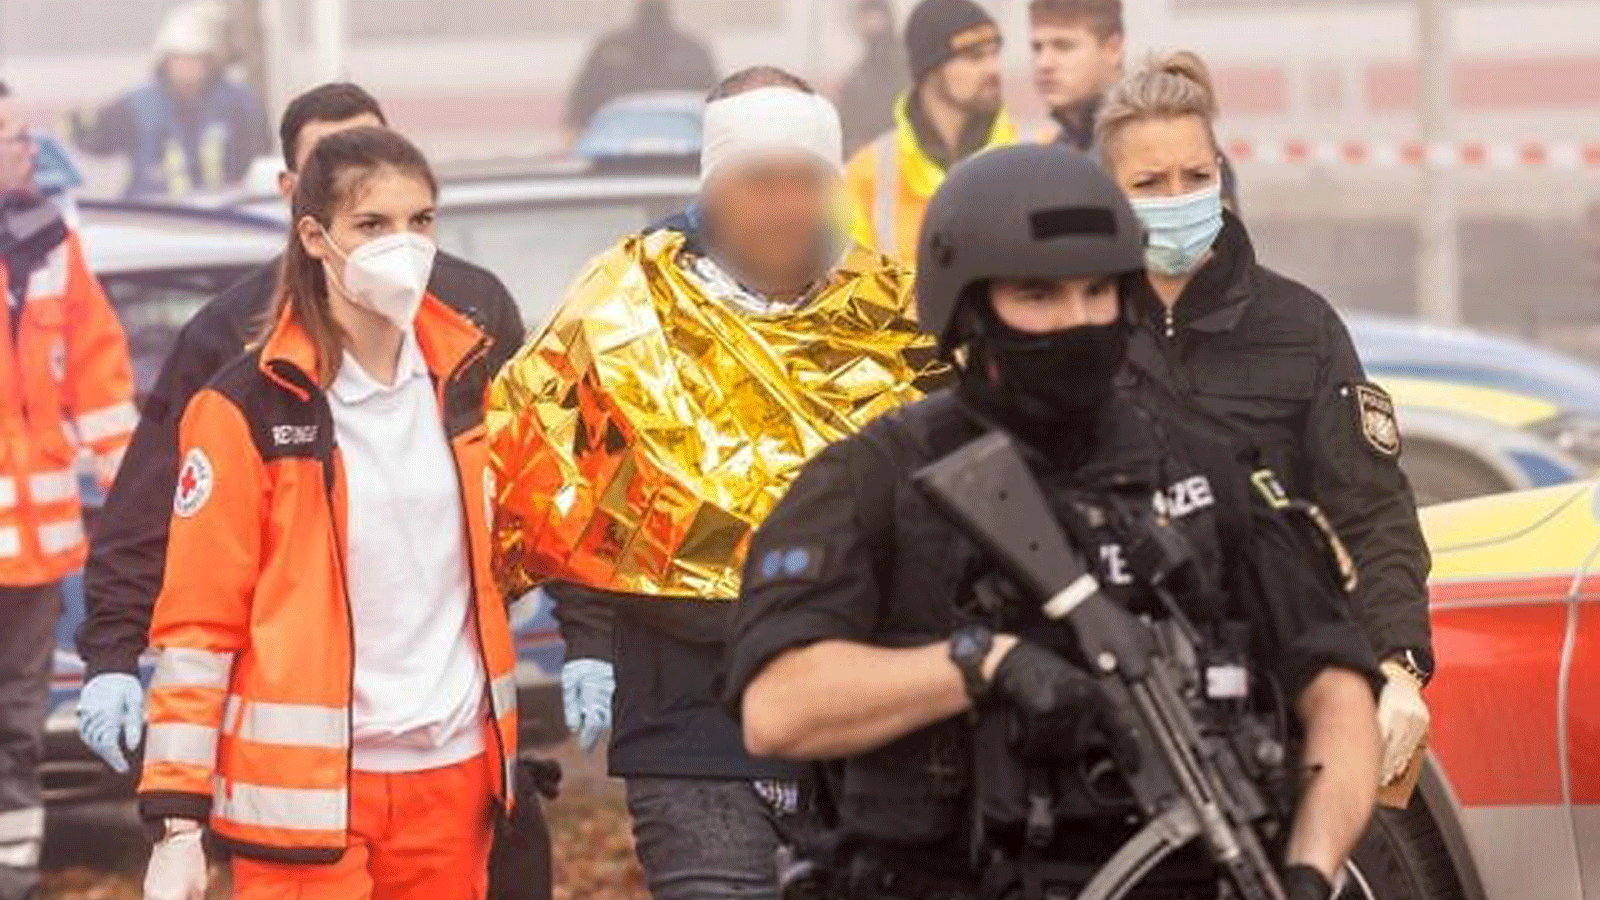 الشرطة الألمانية وعمال الإنقاذ يسيرون مع رجل محتجز في 6 تشرين الثاني/نوفمبر 2021، في زوبرسدورف، جنوب ألمانيا، بعد إصابة عدة أشخاص في هجوم بسكين على قطار فائق السرعة.